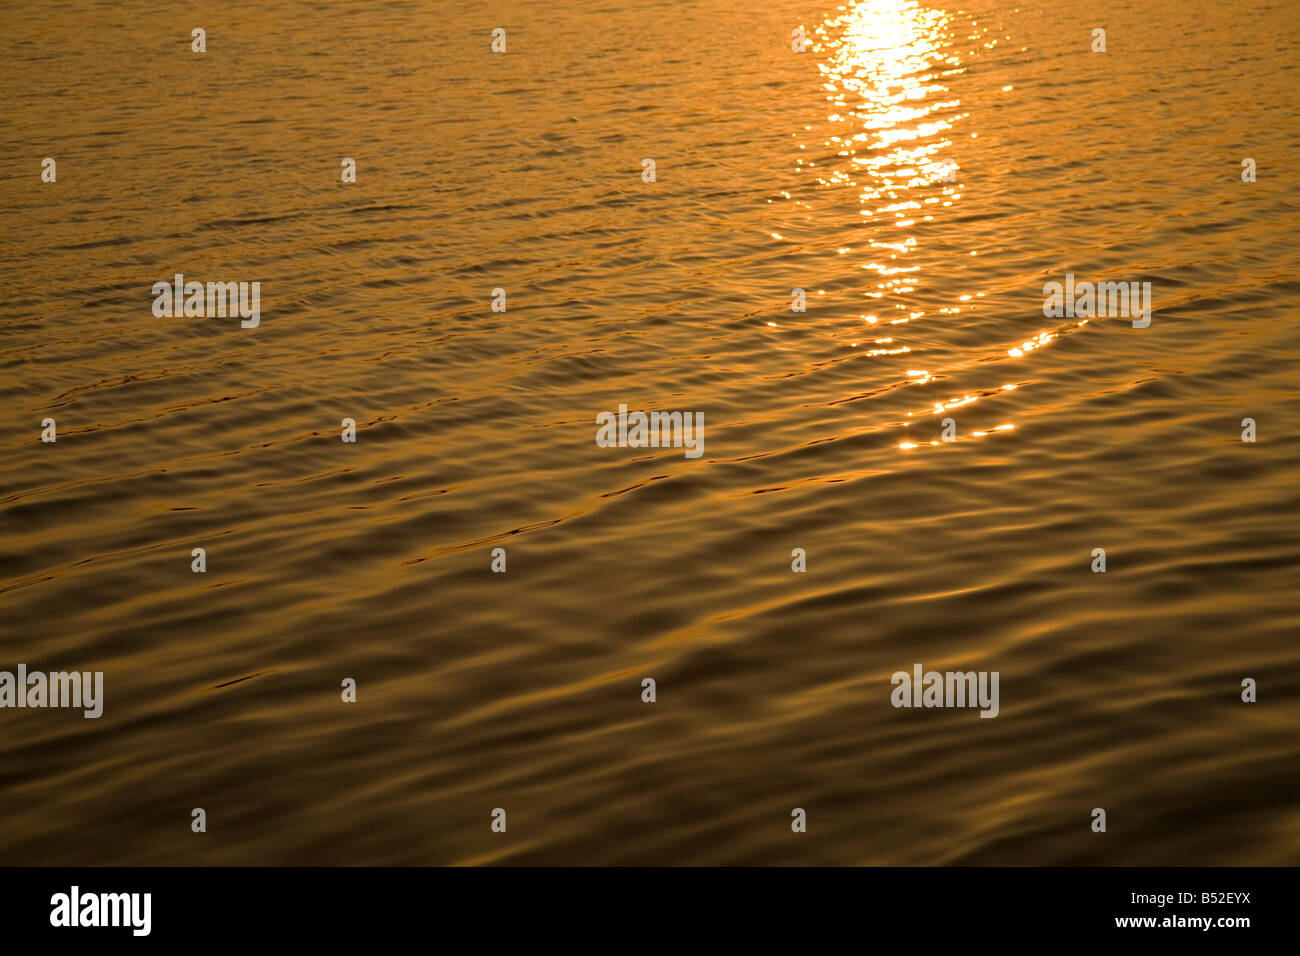 Goldener Sonnenuntergang Gegenwartsgesellschaft auf dem Wasser Stockfoto